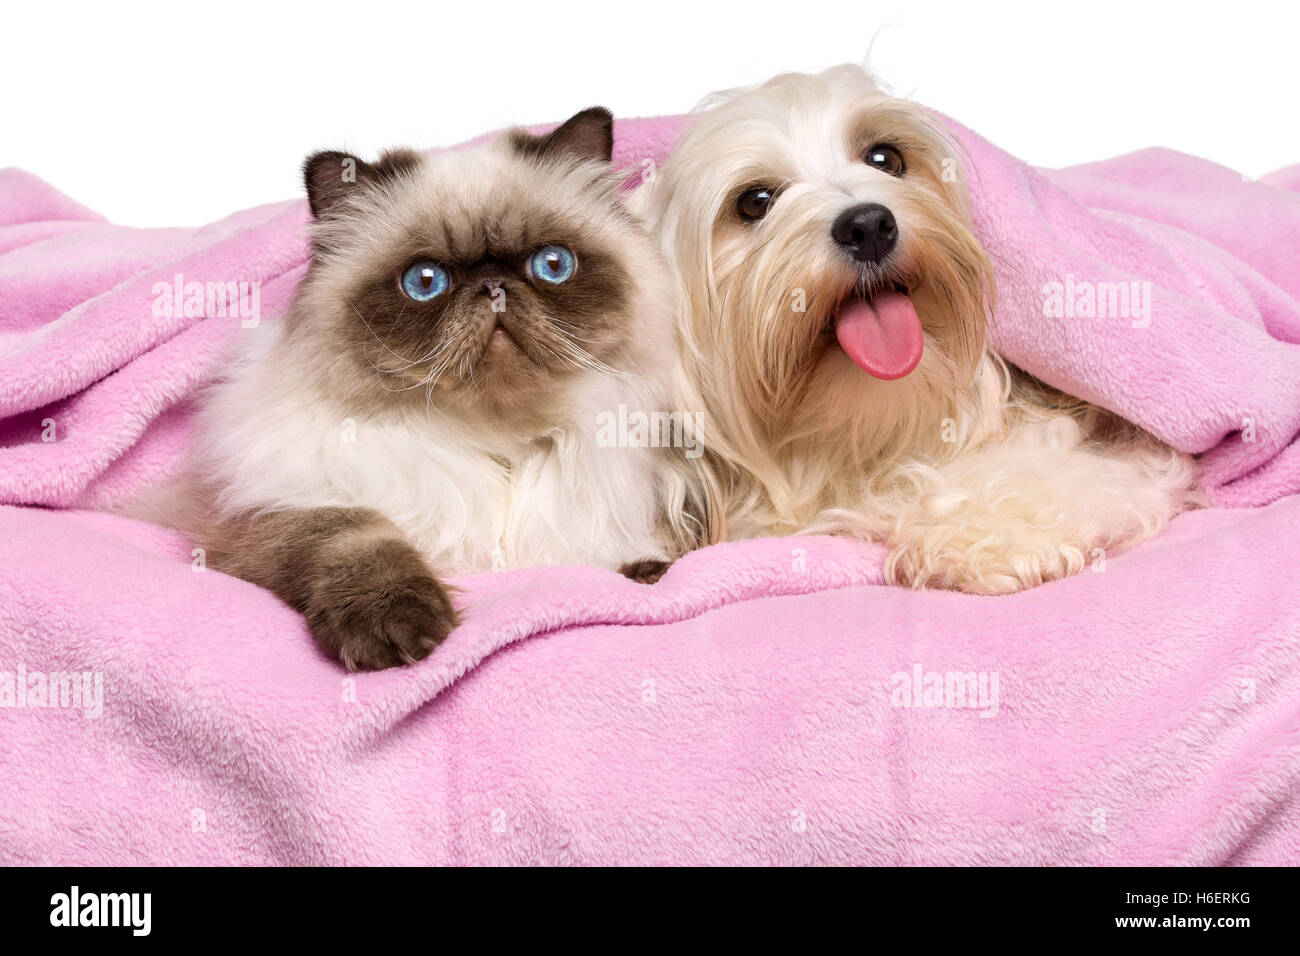 Jeune chat persan et un chien Bichon havanais heureux allongé sur un couvre-lit Banque D'Images